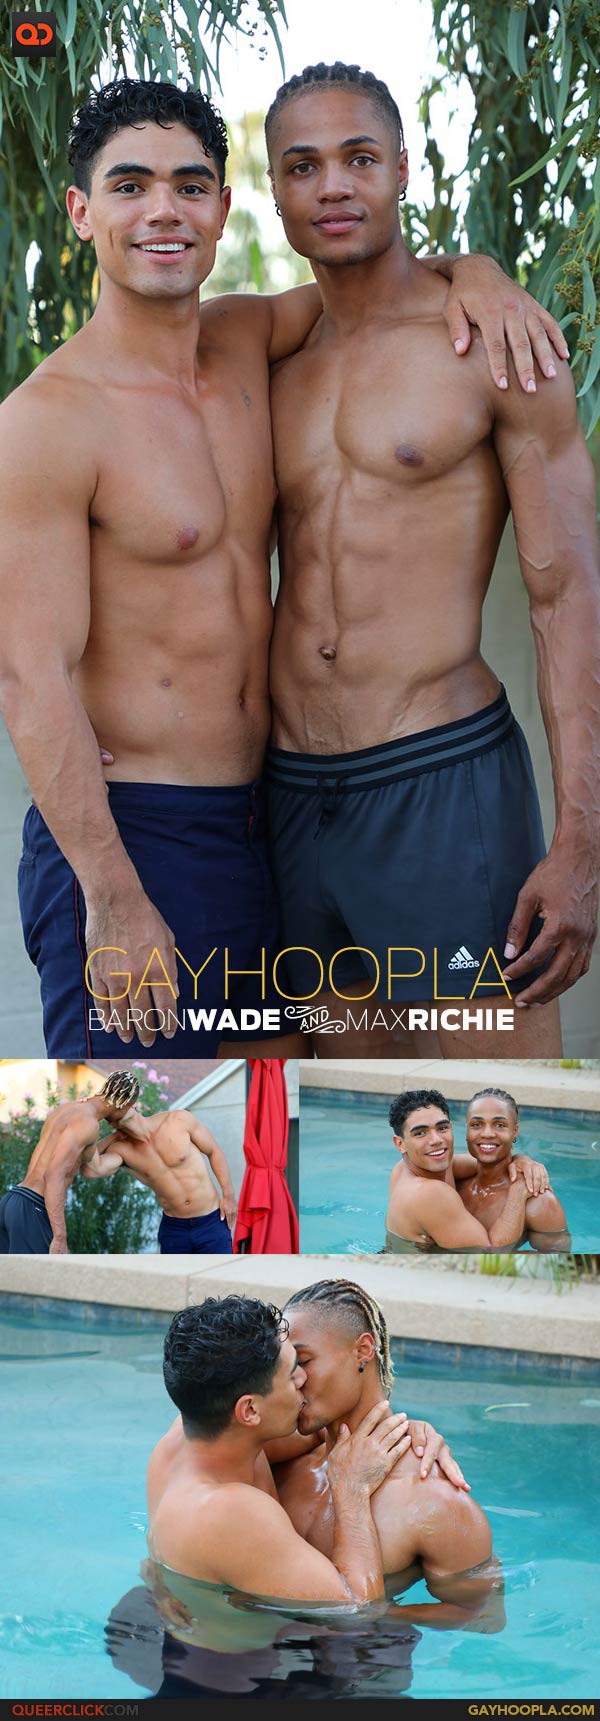 GayHoopla: Baron Wade and Max Richie